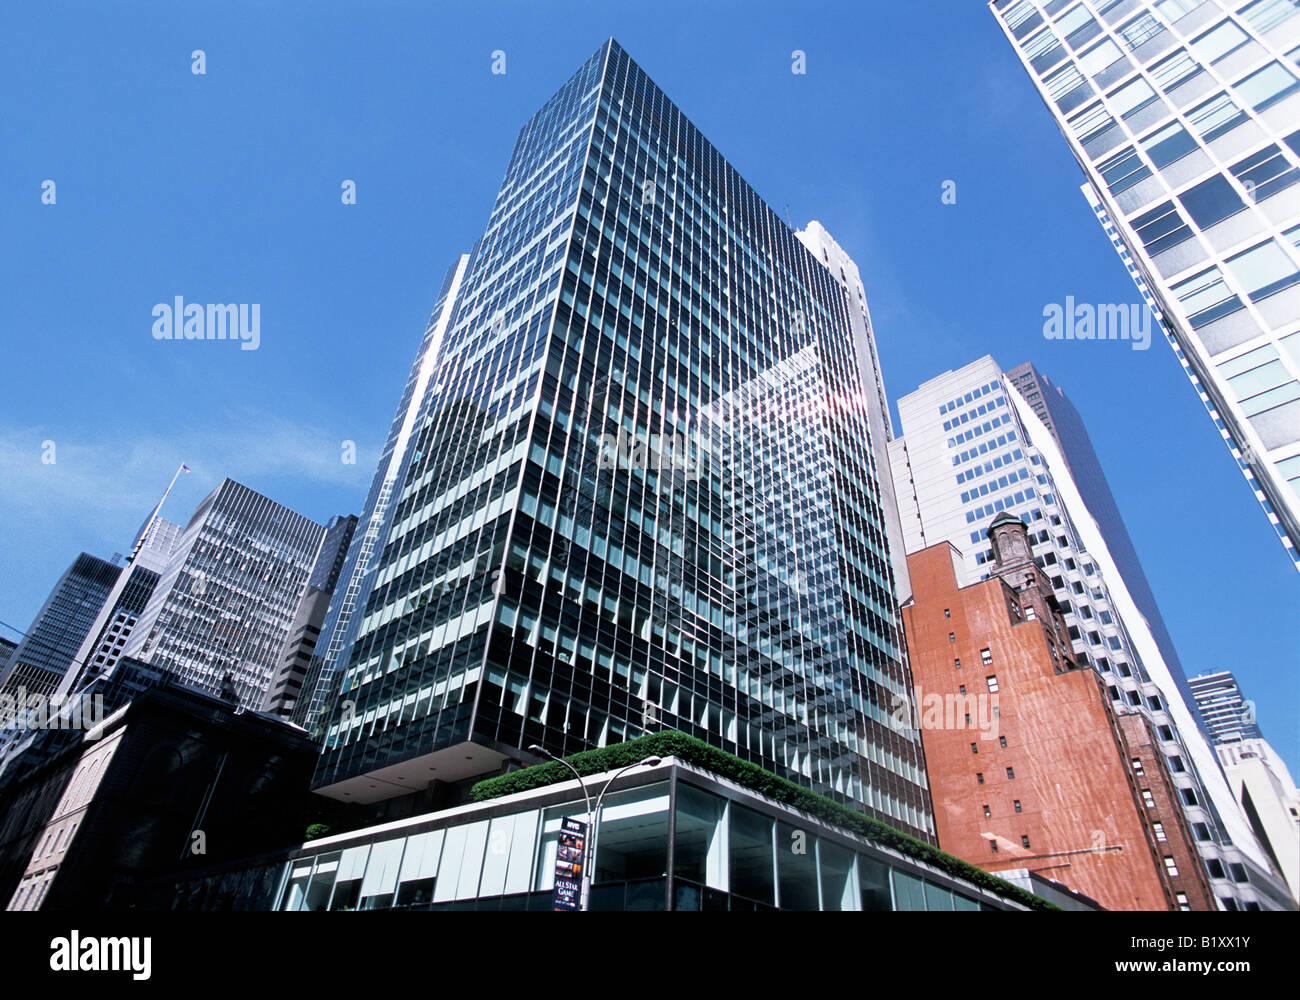 Lever House 390 Park Avenue dans le centre-ville de New York.Une tour de verre du modernisme et un bâtiment de bureaux de gratte-ciel historique ont été achevés en 1952.ÉTATS-UNIS Banque D'Images